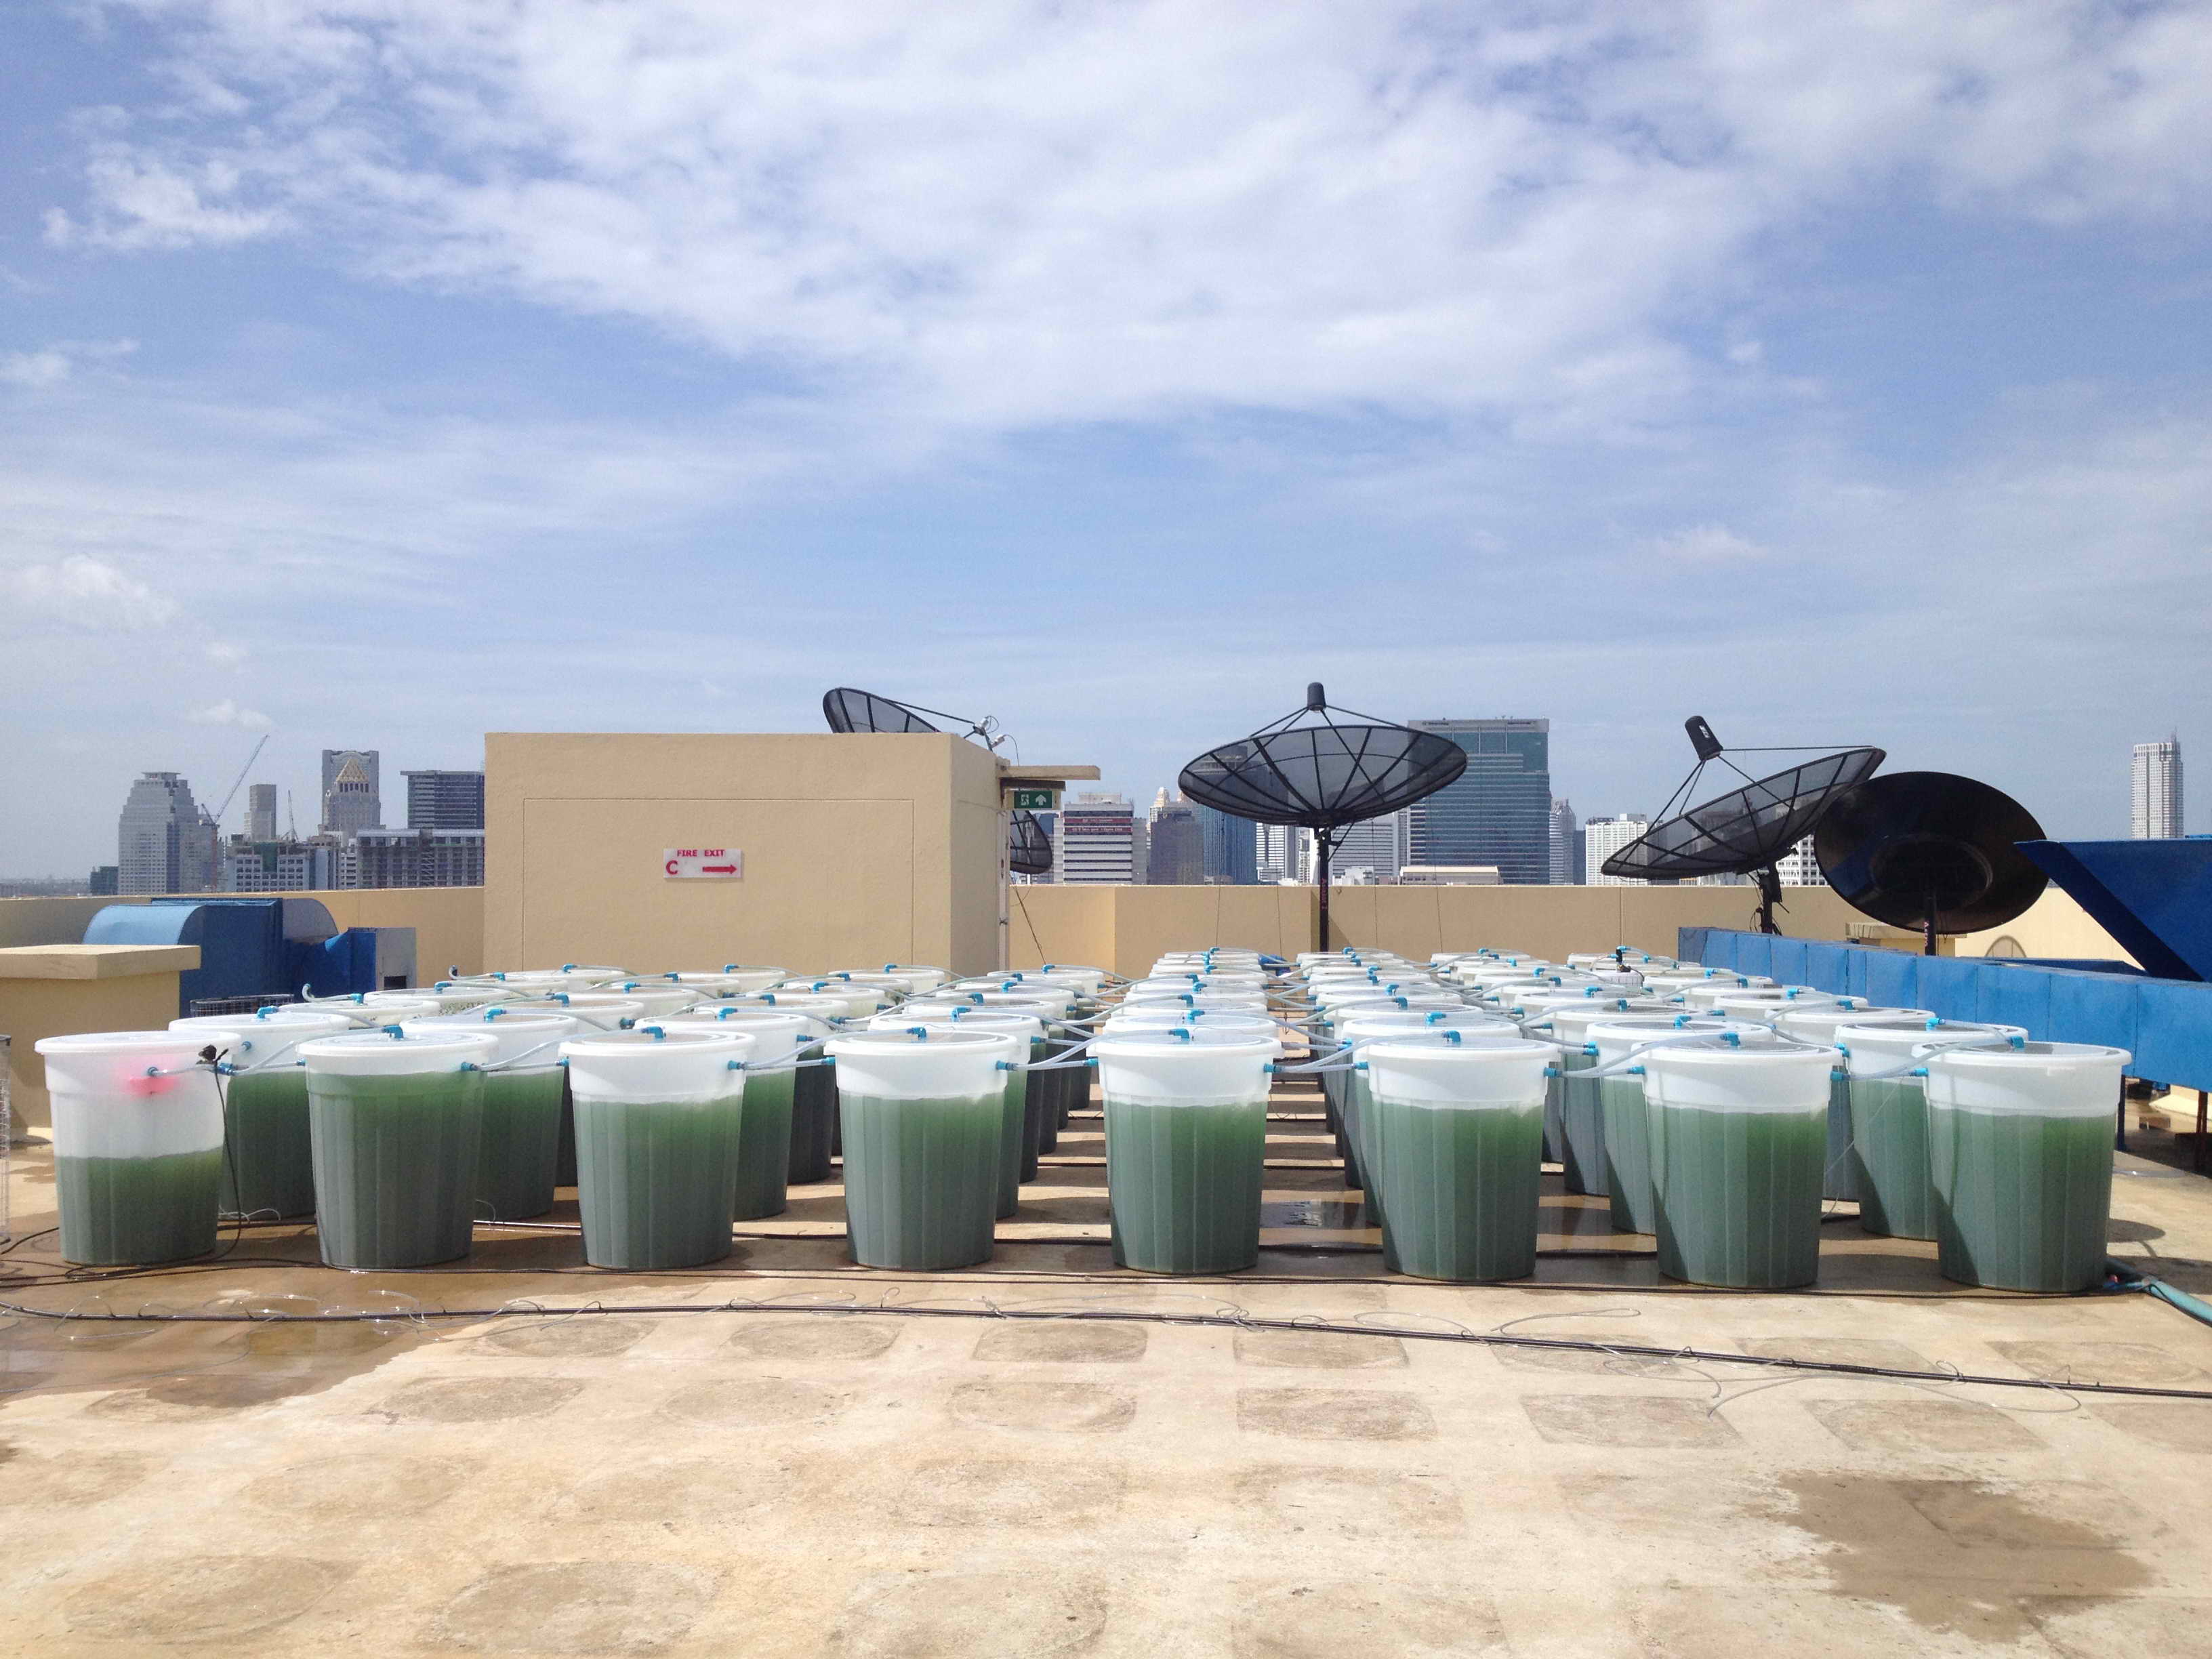 Die Zukunft der Landwirtschaft? Mit minimalem Land- und Wassereinsatz produziert EnerGaia Spirulina auf den Dächern Bangkoks (Foto: EnerGaia)